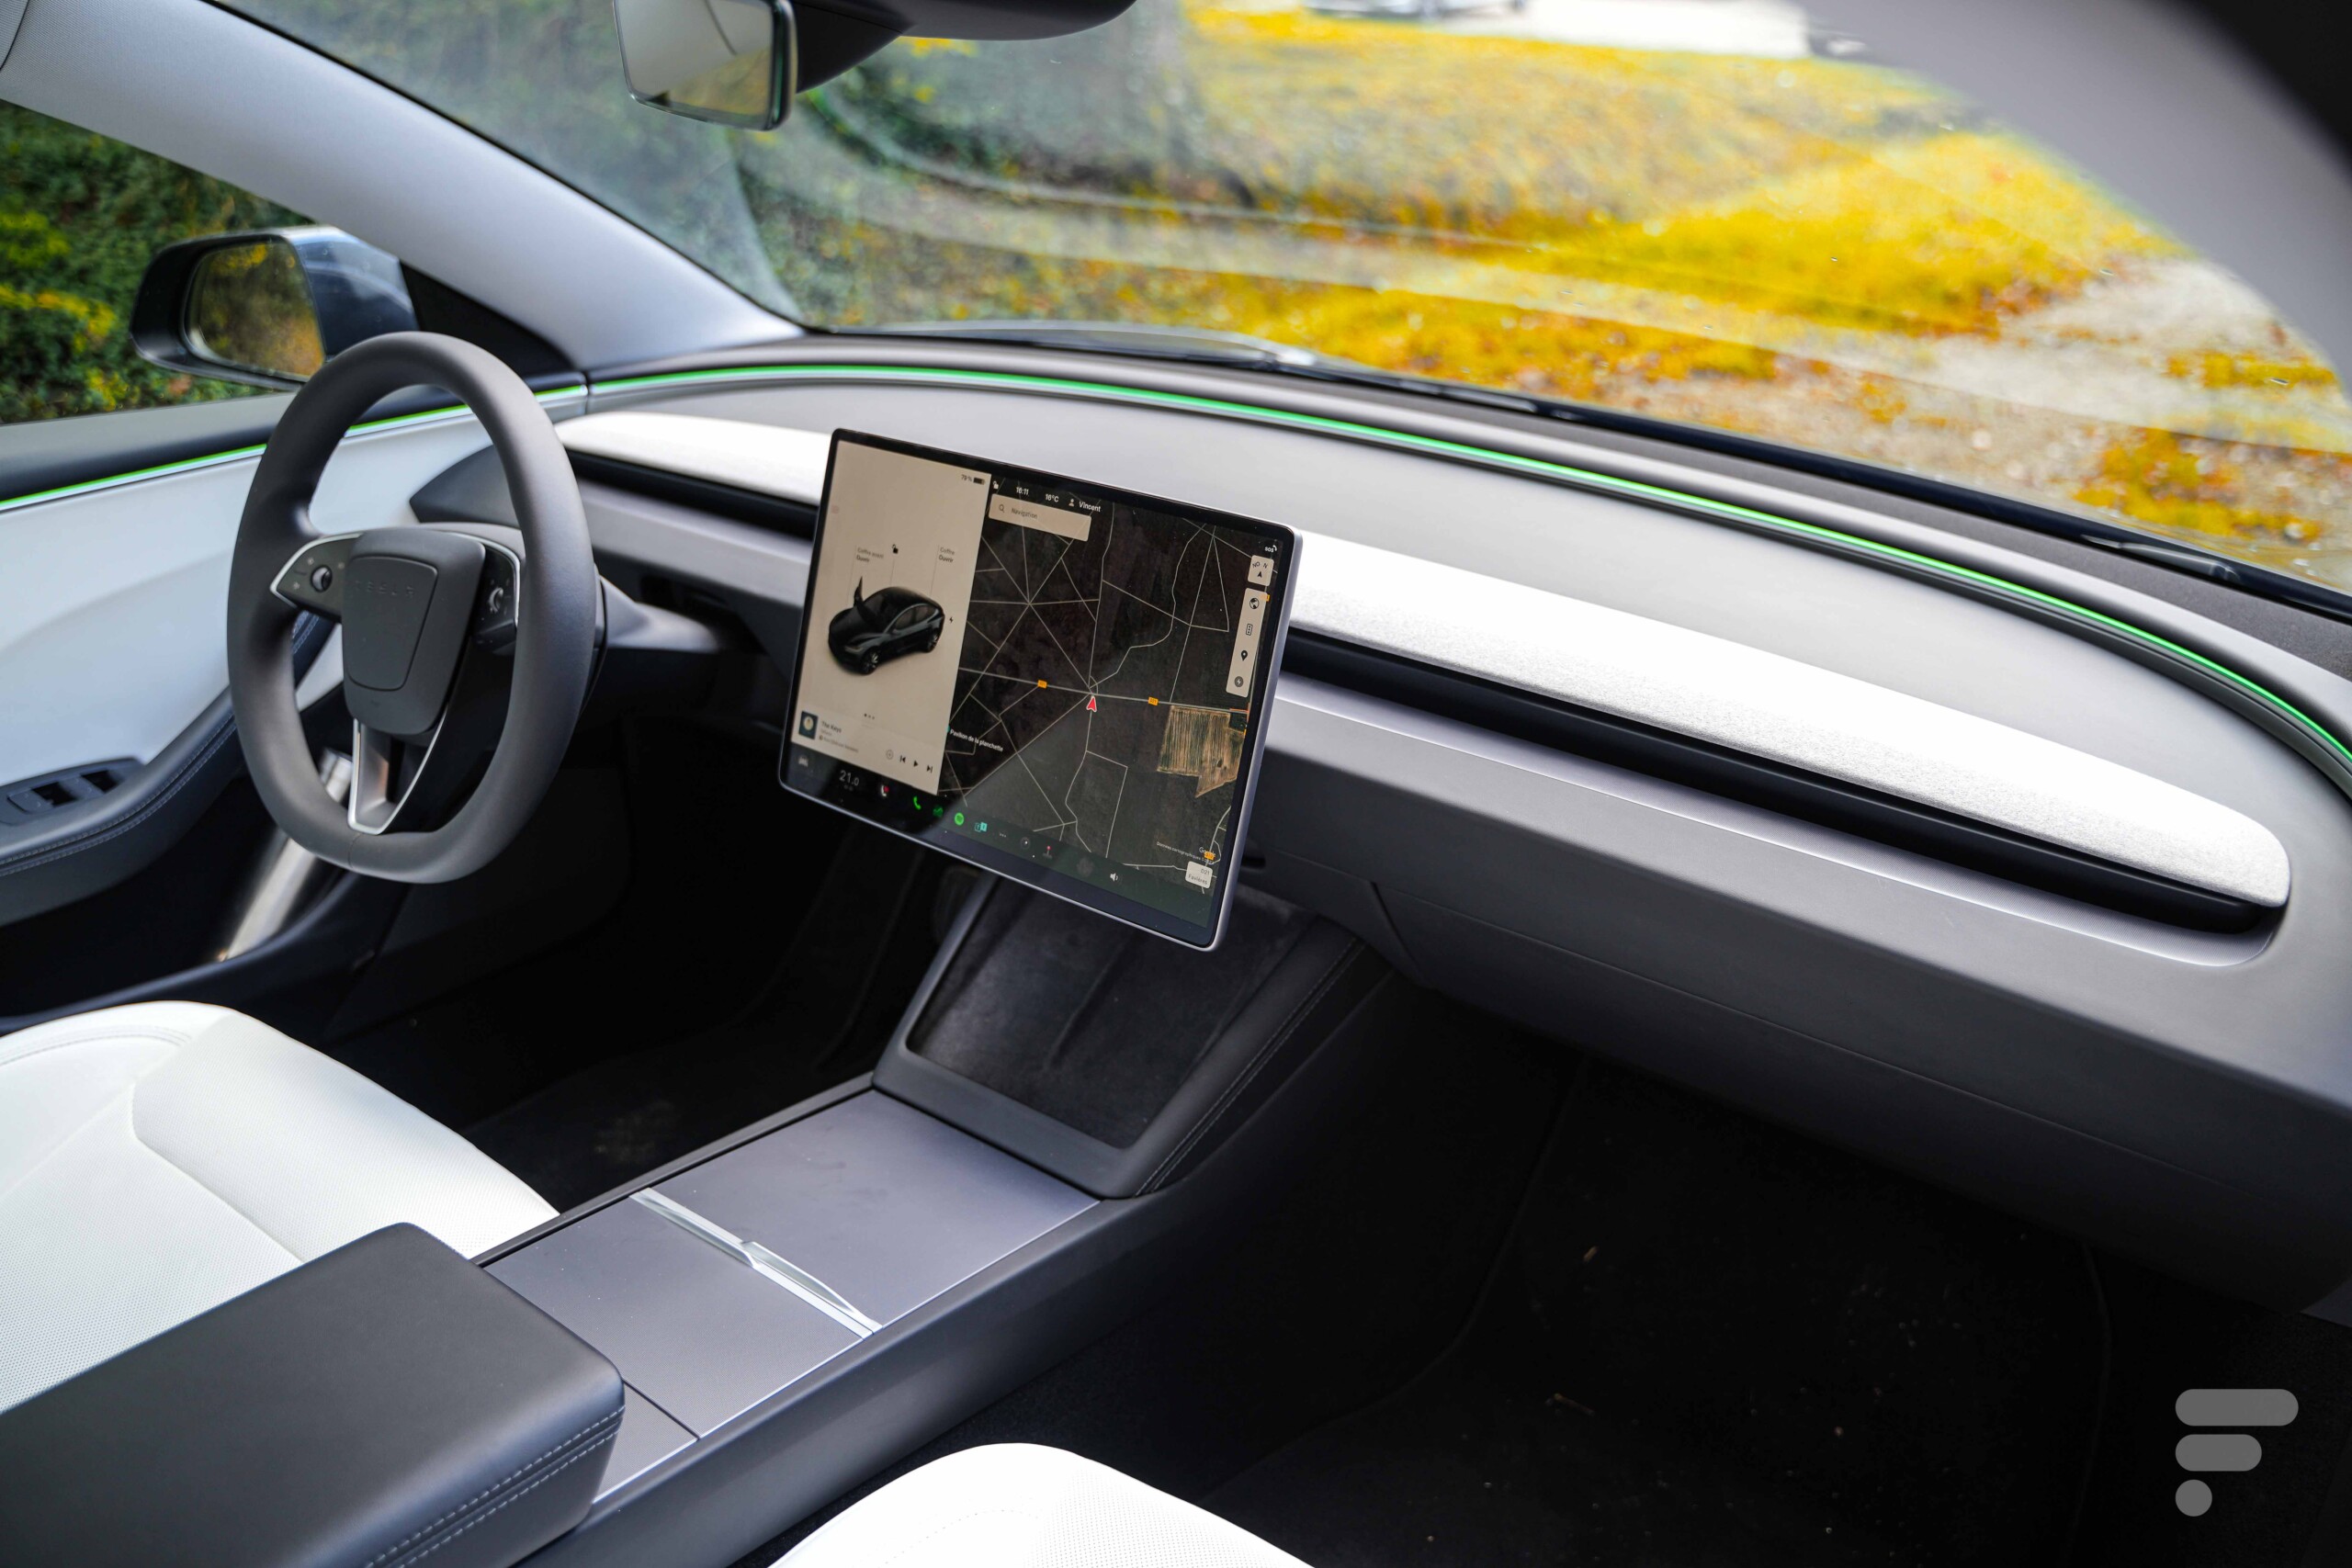 Le nouvelle Tesla Model 3 Highland cache un secret : un indicateur